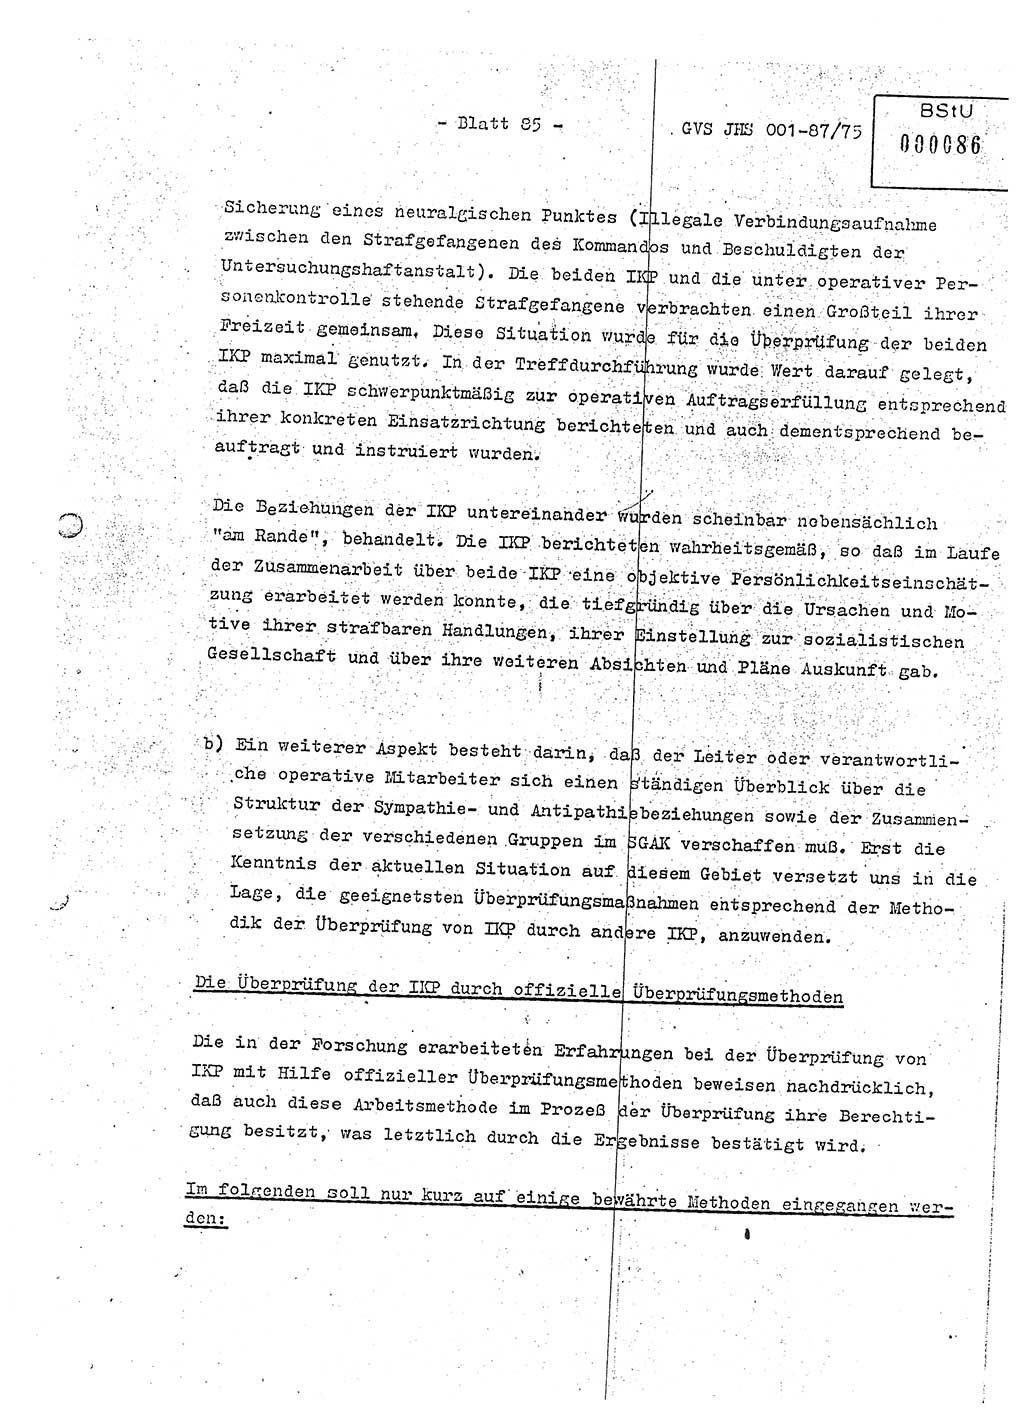 Diplomarbeit Hauptmann Volkmar Heinz (Abt. ⅩⅣ), Oberleutnant Lothar Rüdiger (BV Lpz. Abt. Ⅺ), Ministerium für Staatssicherheit (MfS) [Deutsche Demokratische Republik (DDR)], Juristische Hochschule (JHS), Geheime Verschlußsache (GVS) o001-87/75, Potsdam 1975, Seite 85 (Dipl.-Arb. MfS DDR JHS GVS o001-87/75 1975, S. 85)